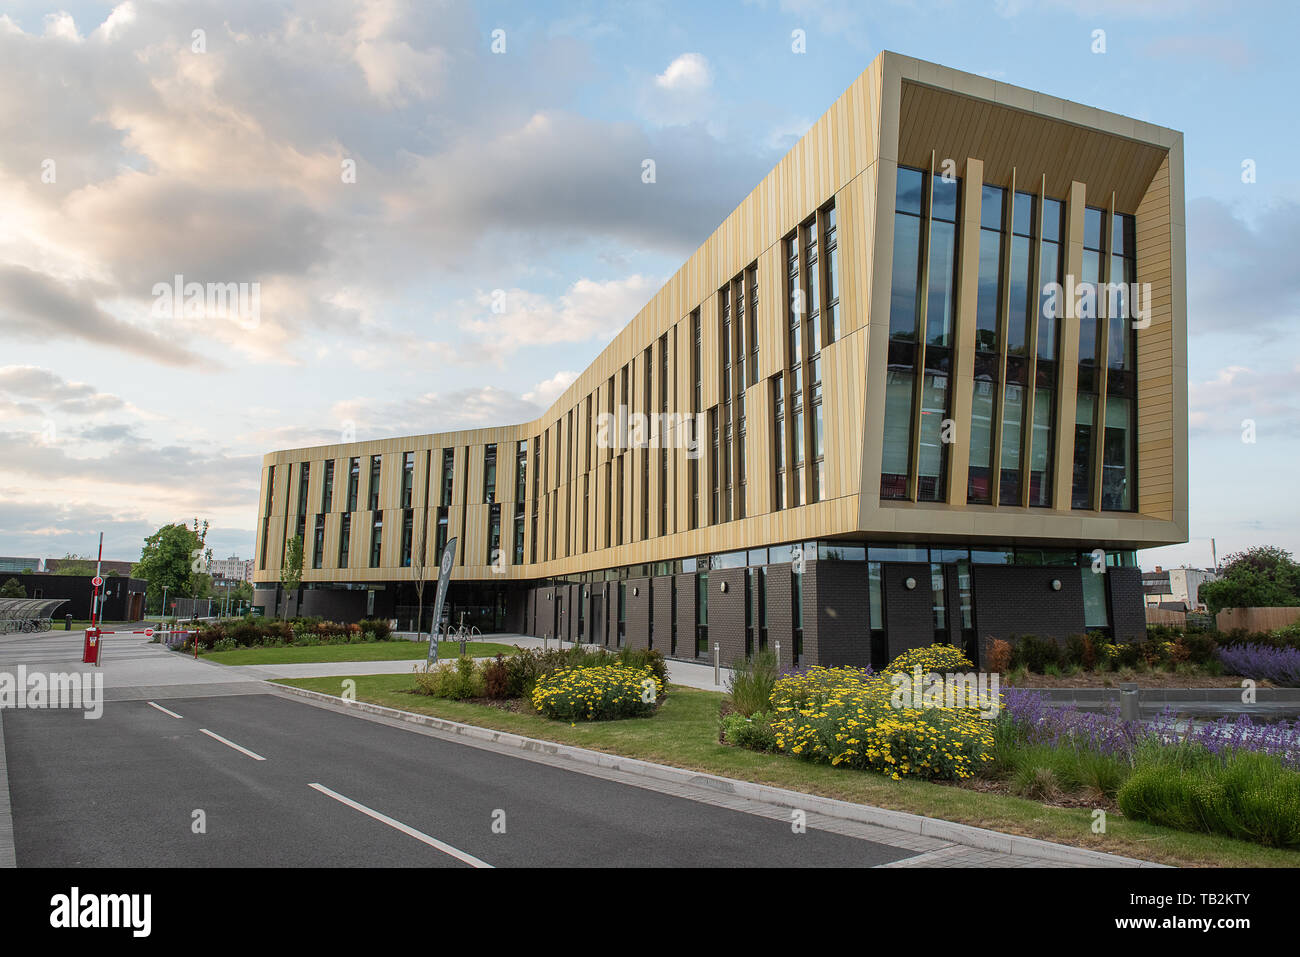 University of Nottingham Jubilee Campus. Bâtiment de fabrication avancée campus jubilee. Banque D'Images